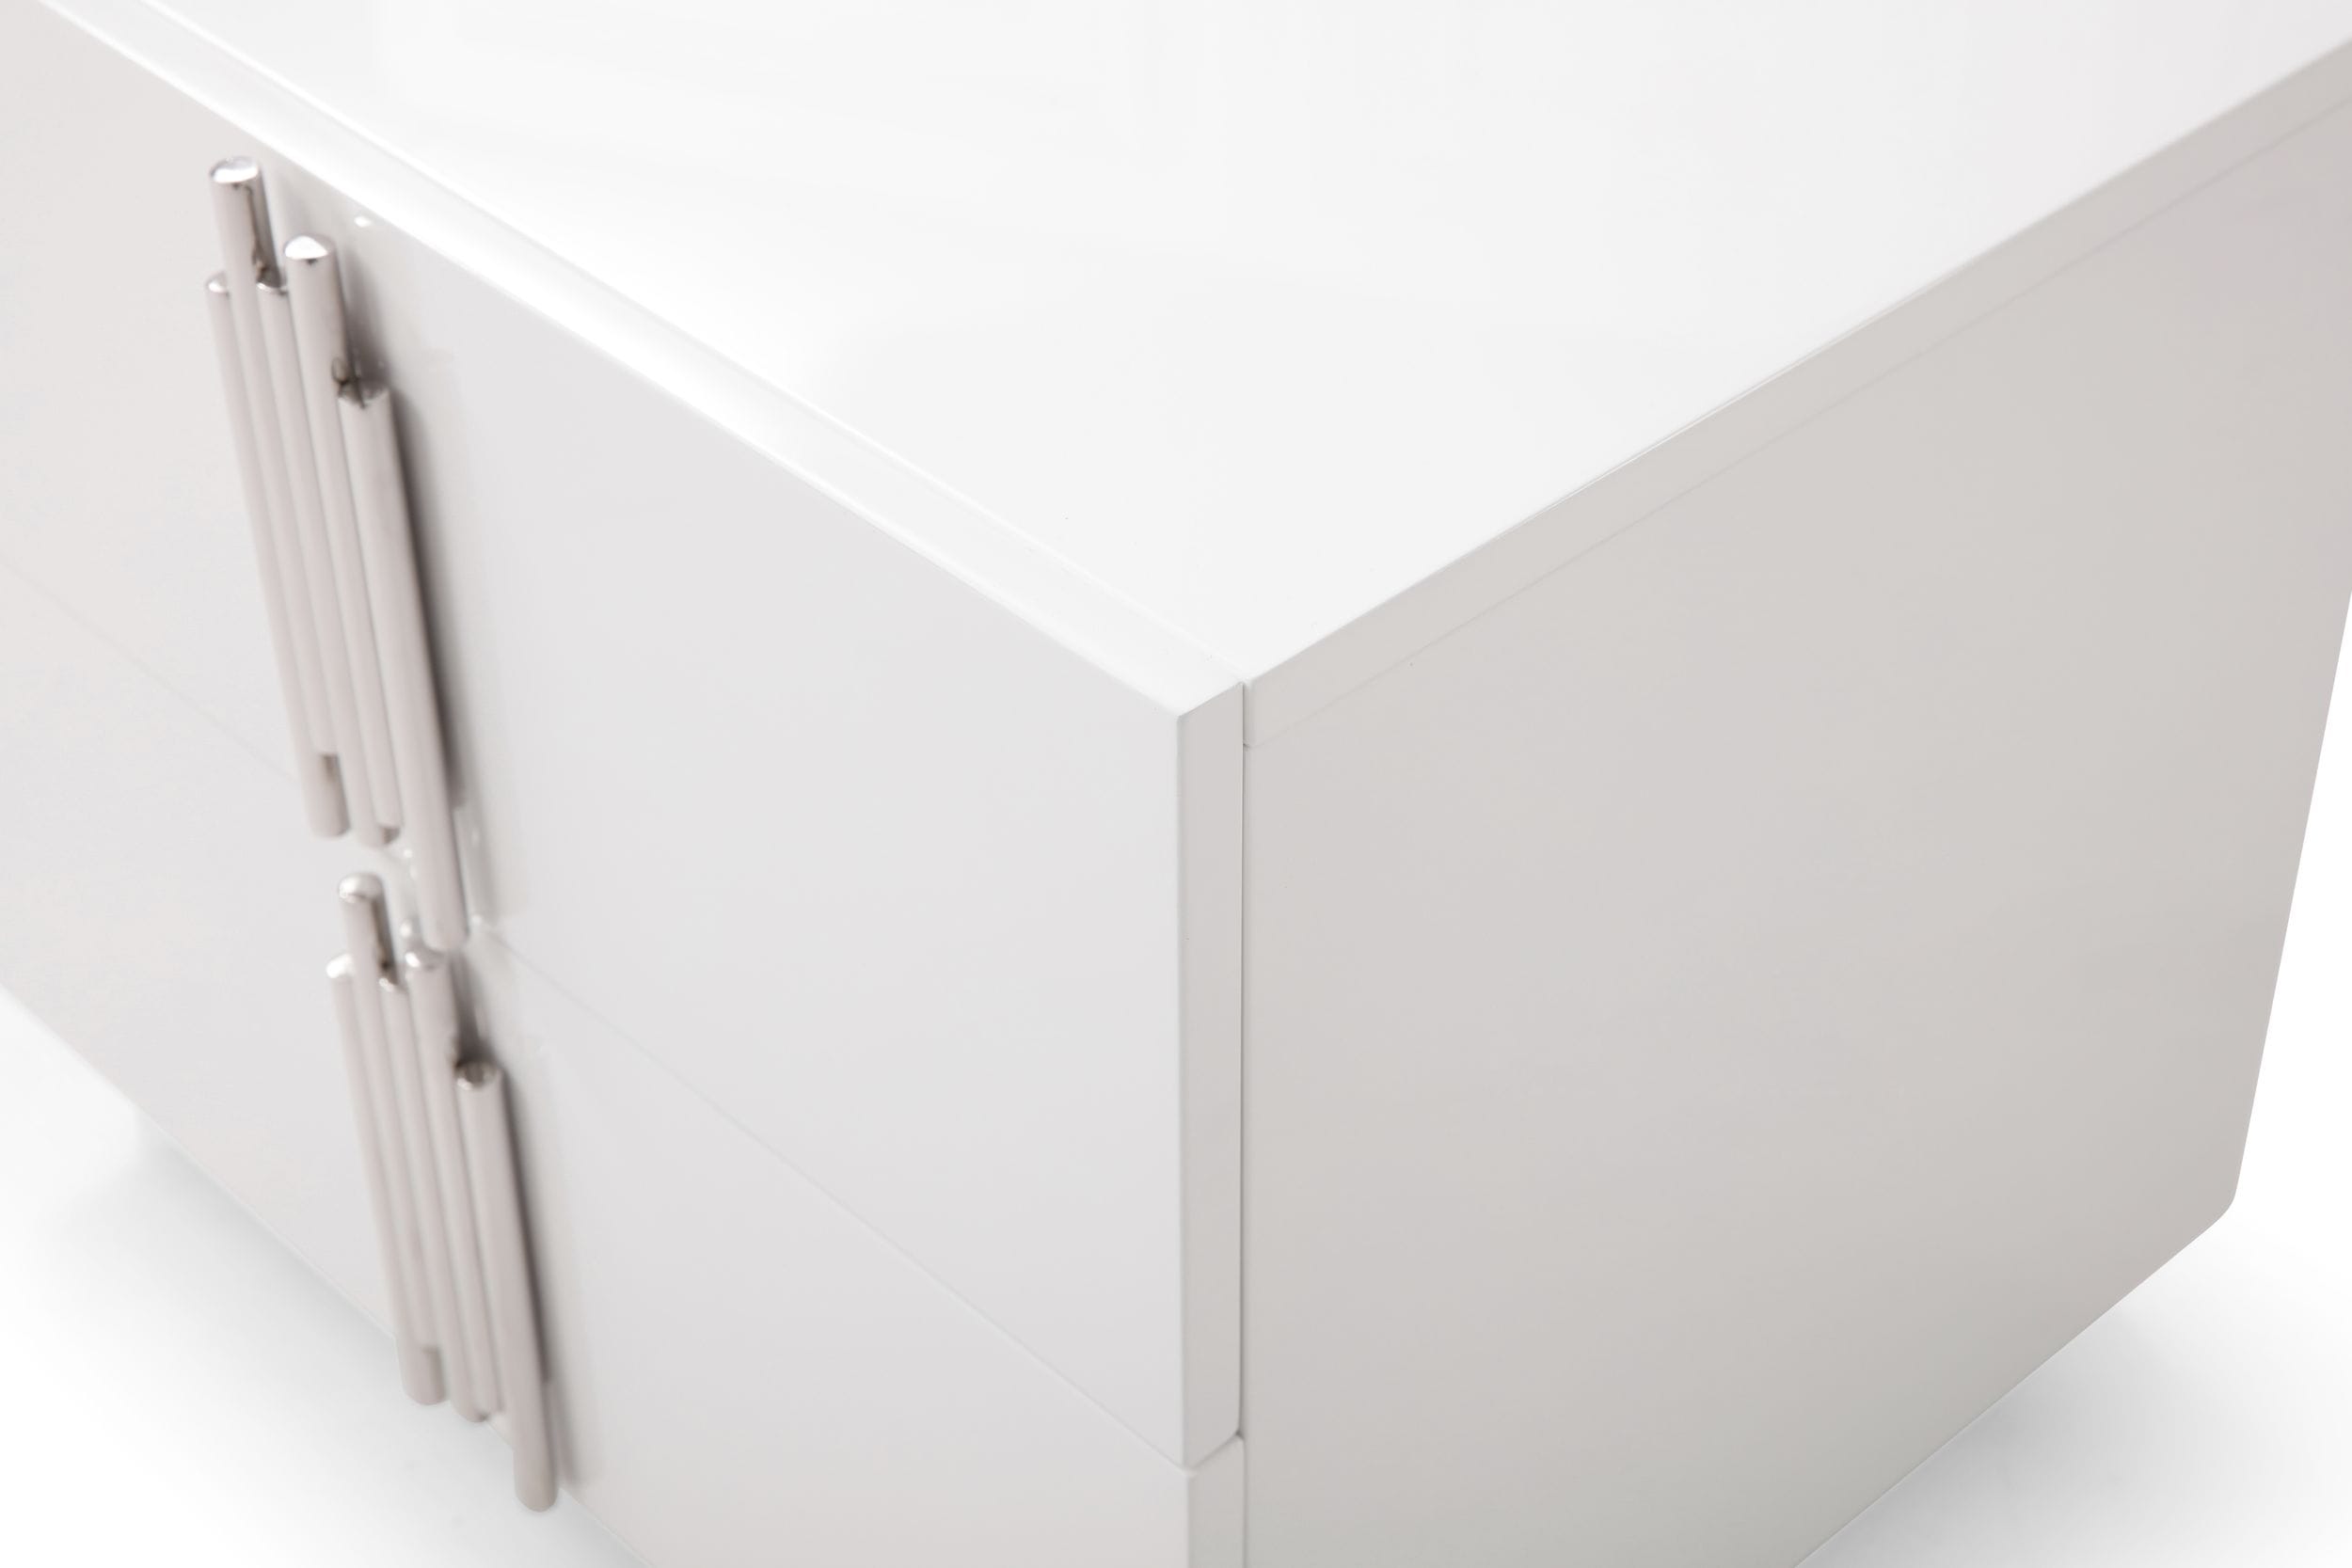 Modrest Token - Modern White & Stainless Steel Dresser-Dresser-VIG-Wall2Wall Furnishings